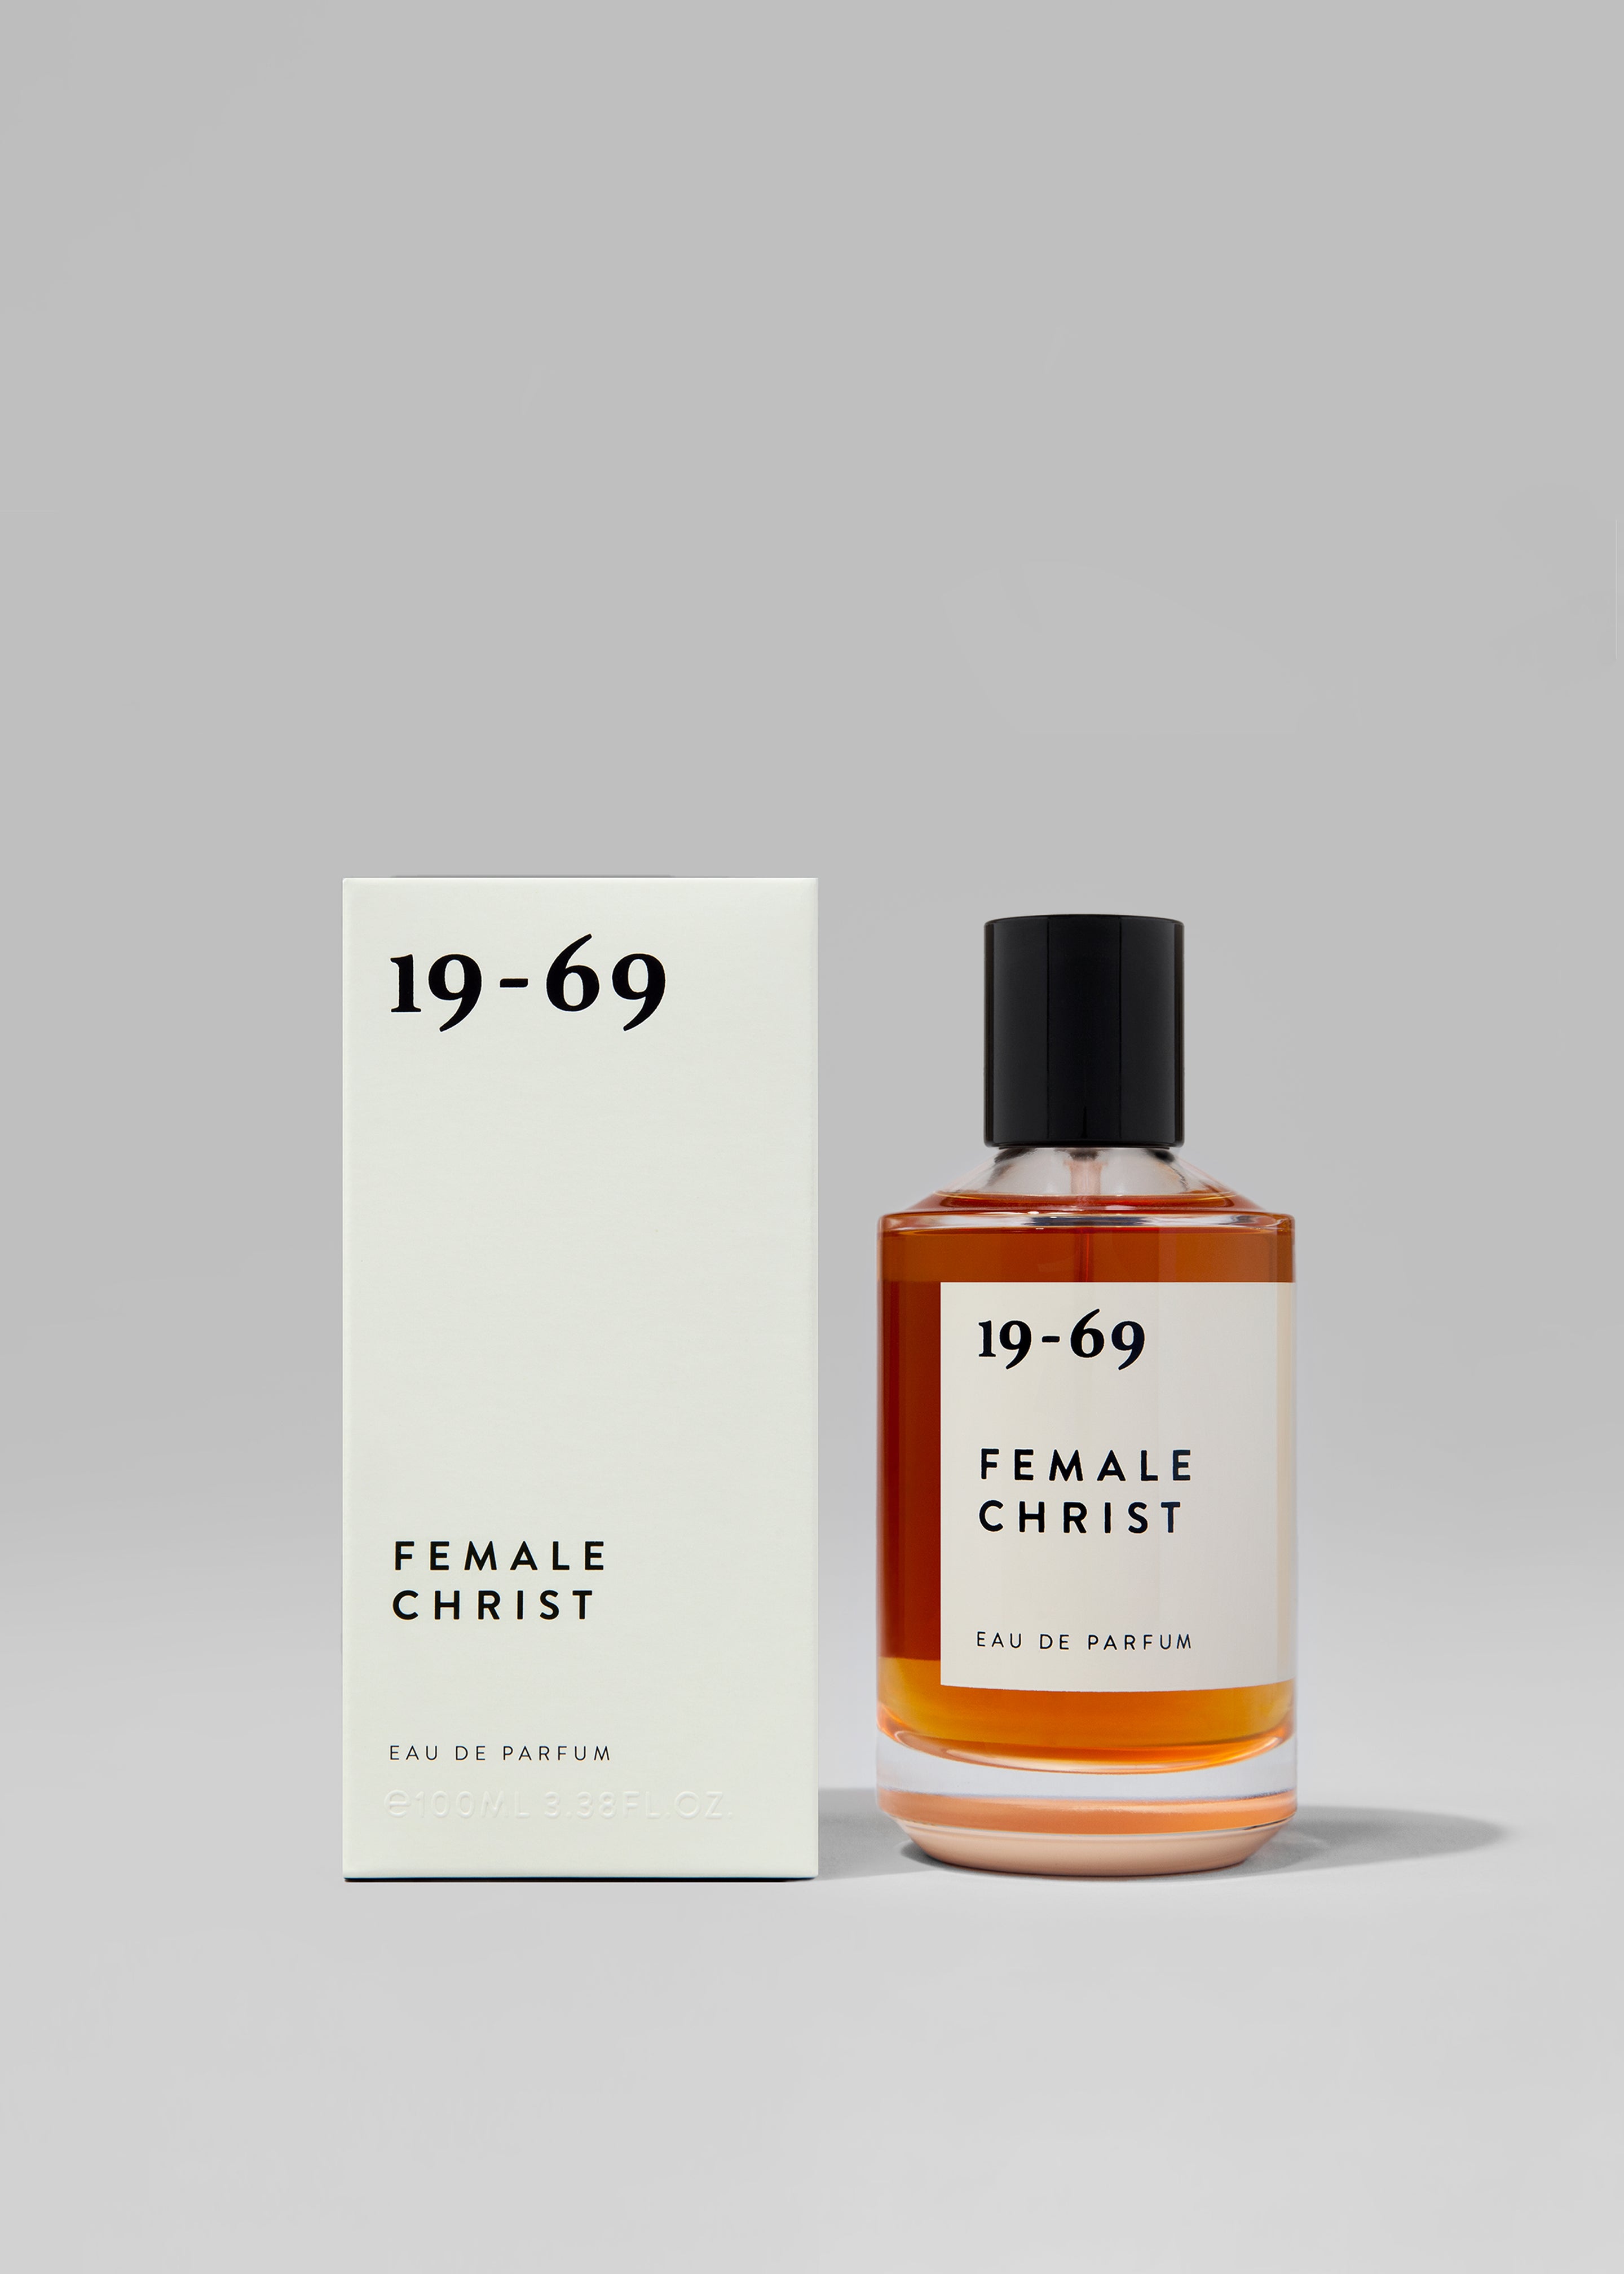 19-69 Female Christ Eau de Parfum - 2